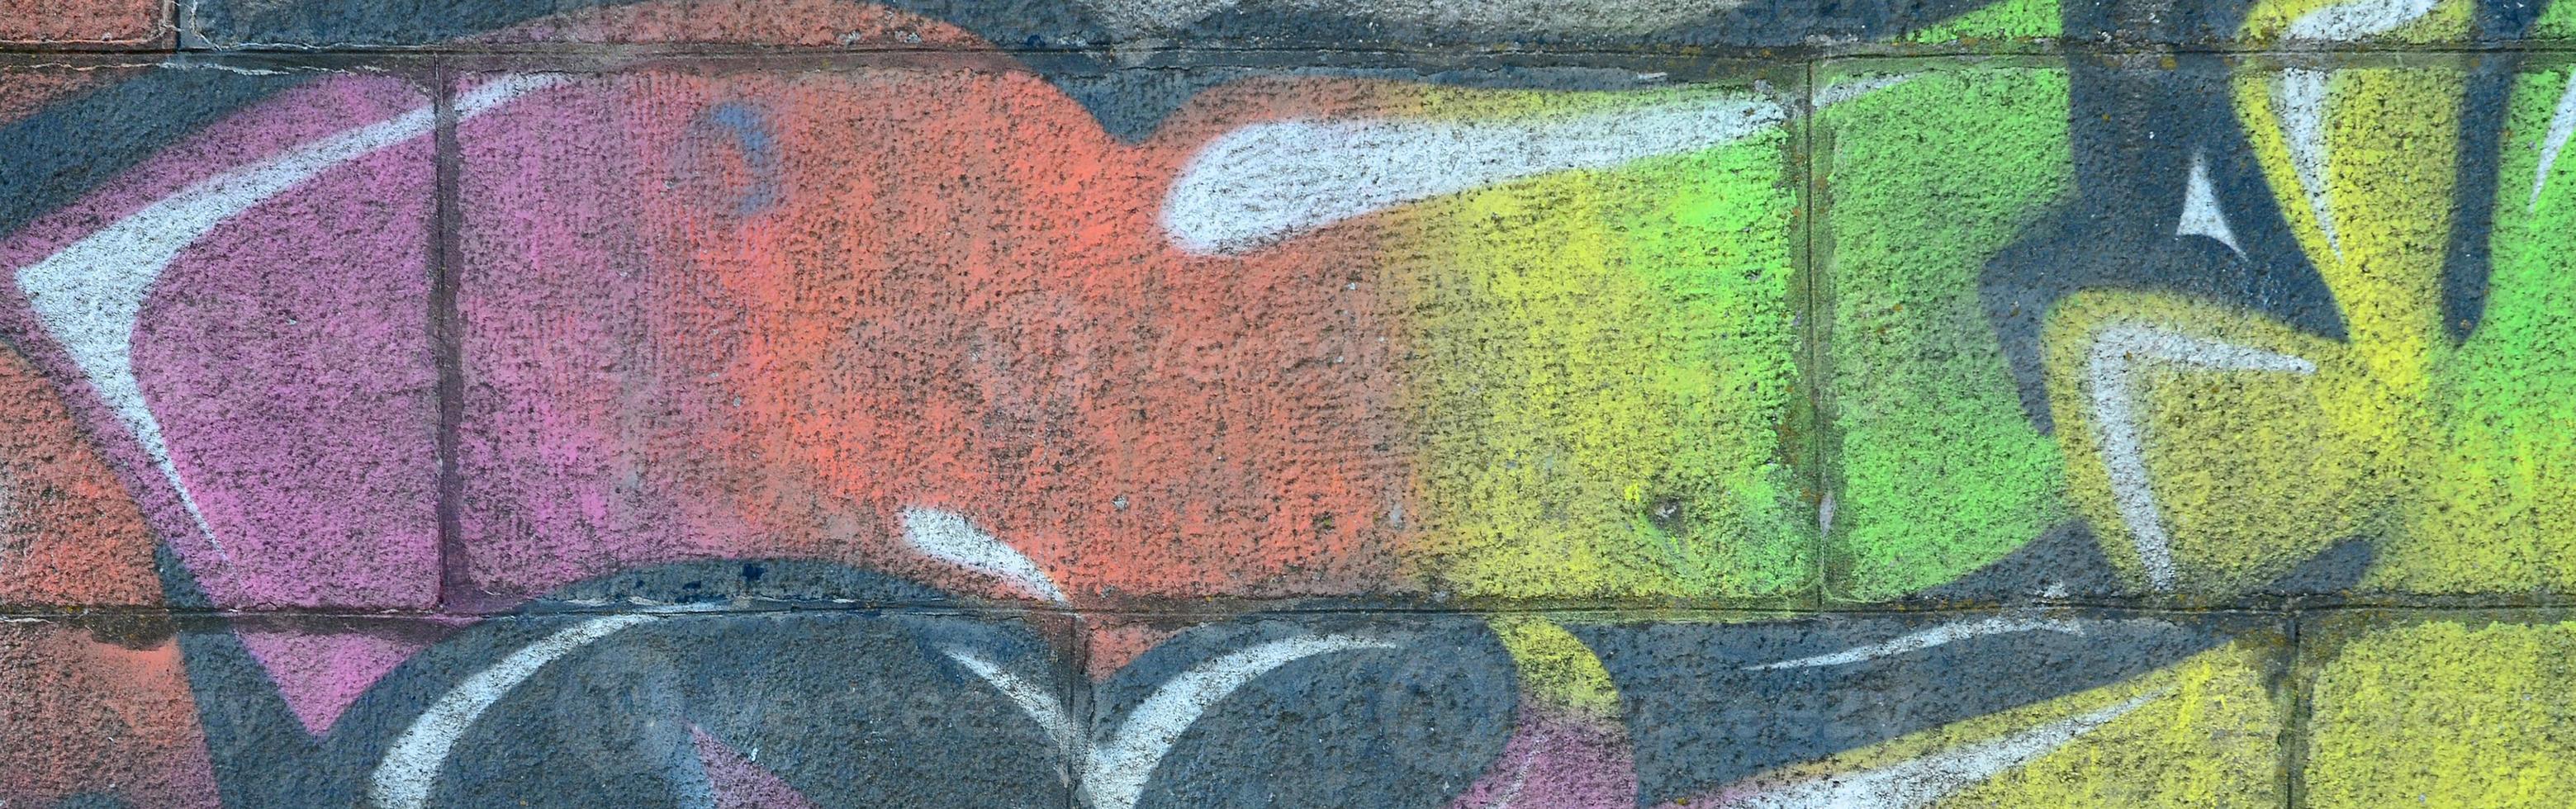 frammento di graffiti disegni. il vecchio parete decorato con dipingere macchie nel il stile di strada arte cultura. multicolore sfondo struttura foto